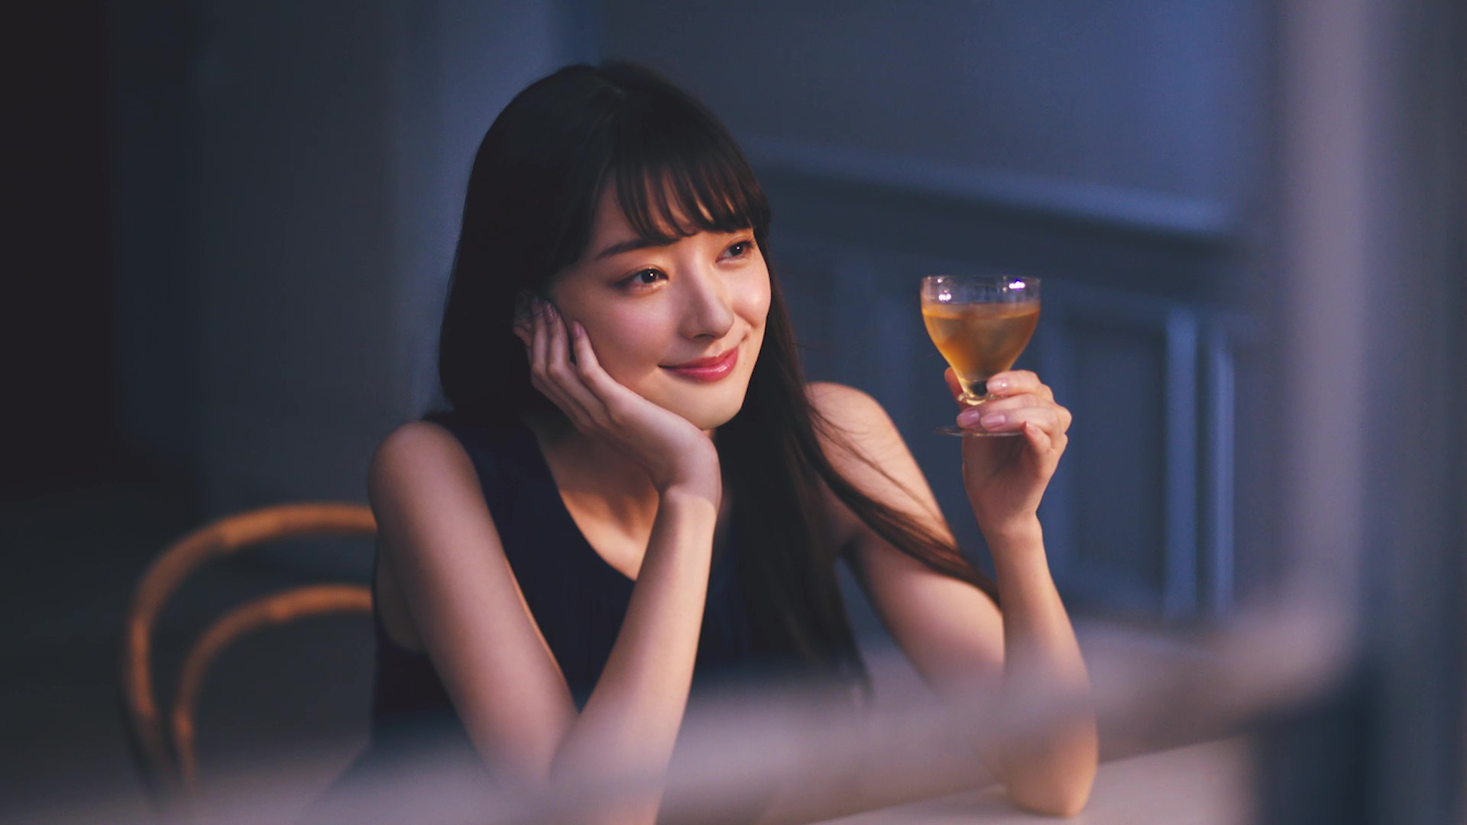 The Choya 新cm 完成 新キャラクターに宮本茉由さんを起用 年8月21日 金 より全国オンエア開始 チョーヤ梅酒株式会社のプレスリリース